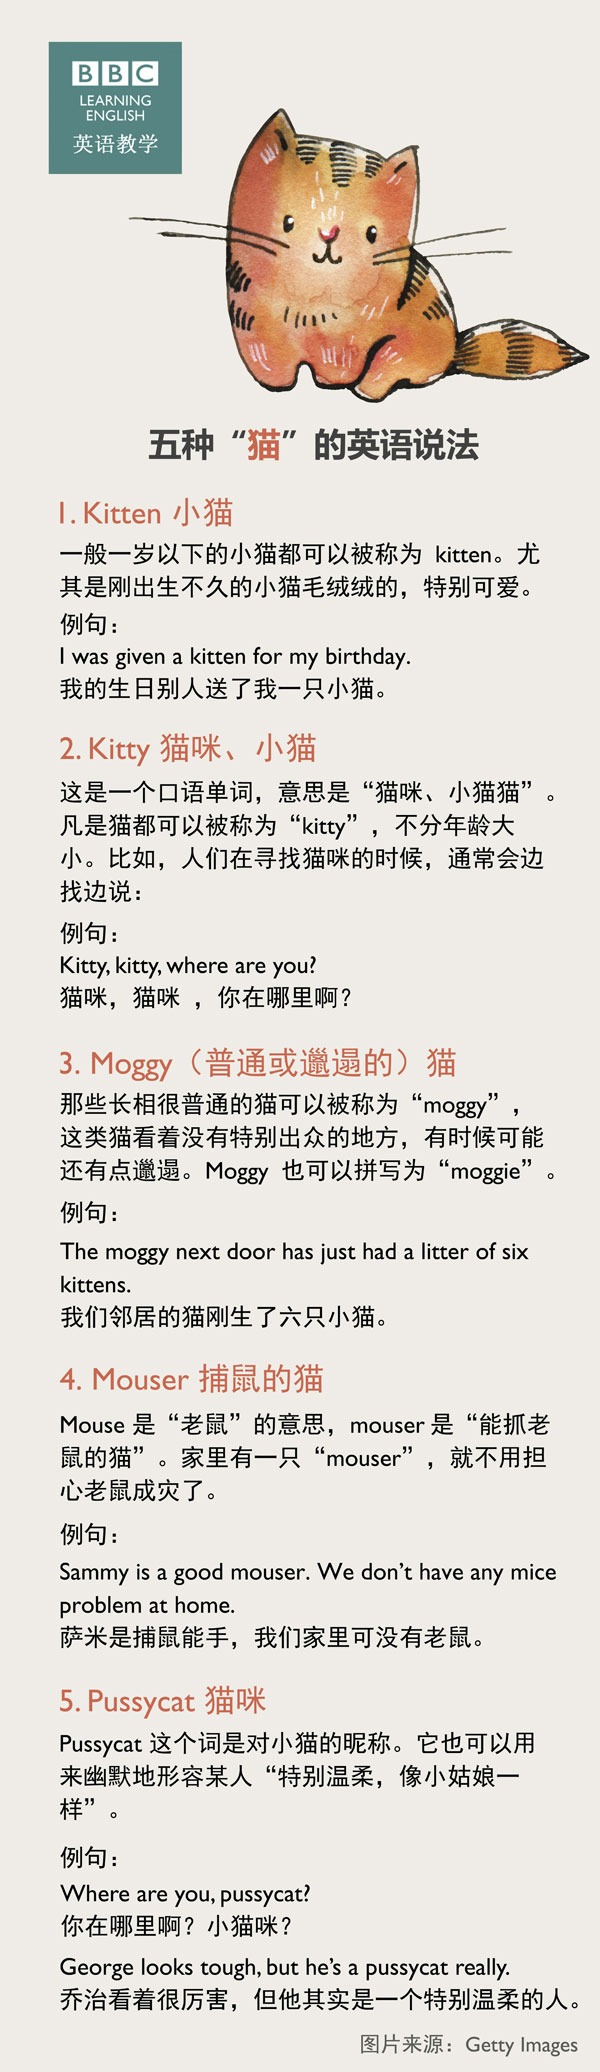 五种“猫”的英语说法